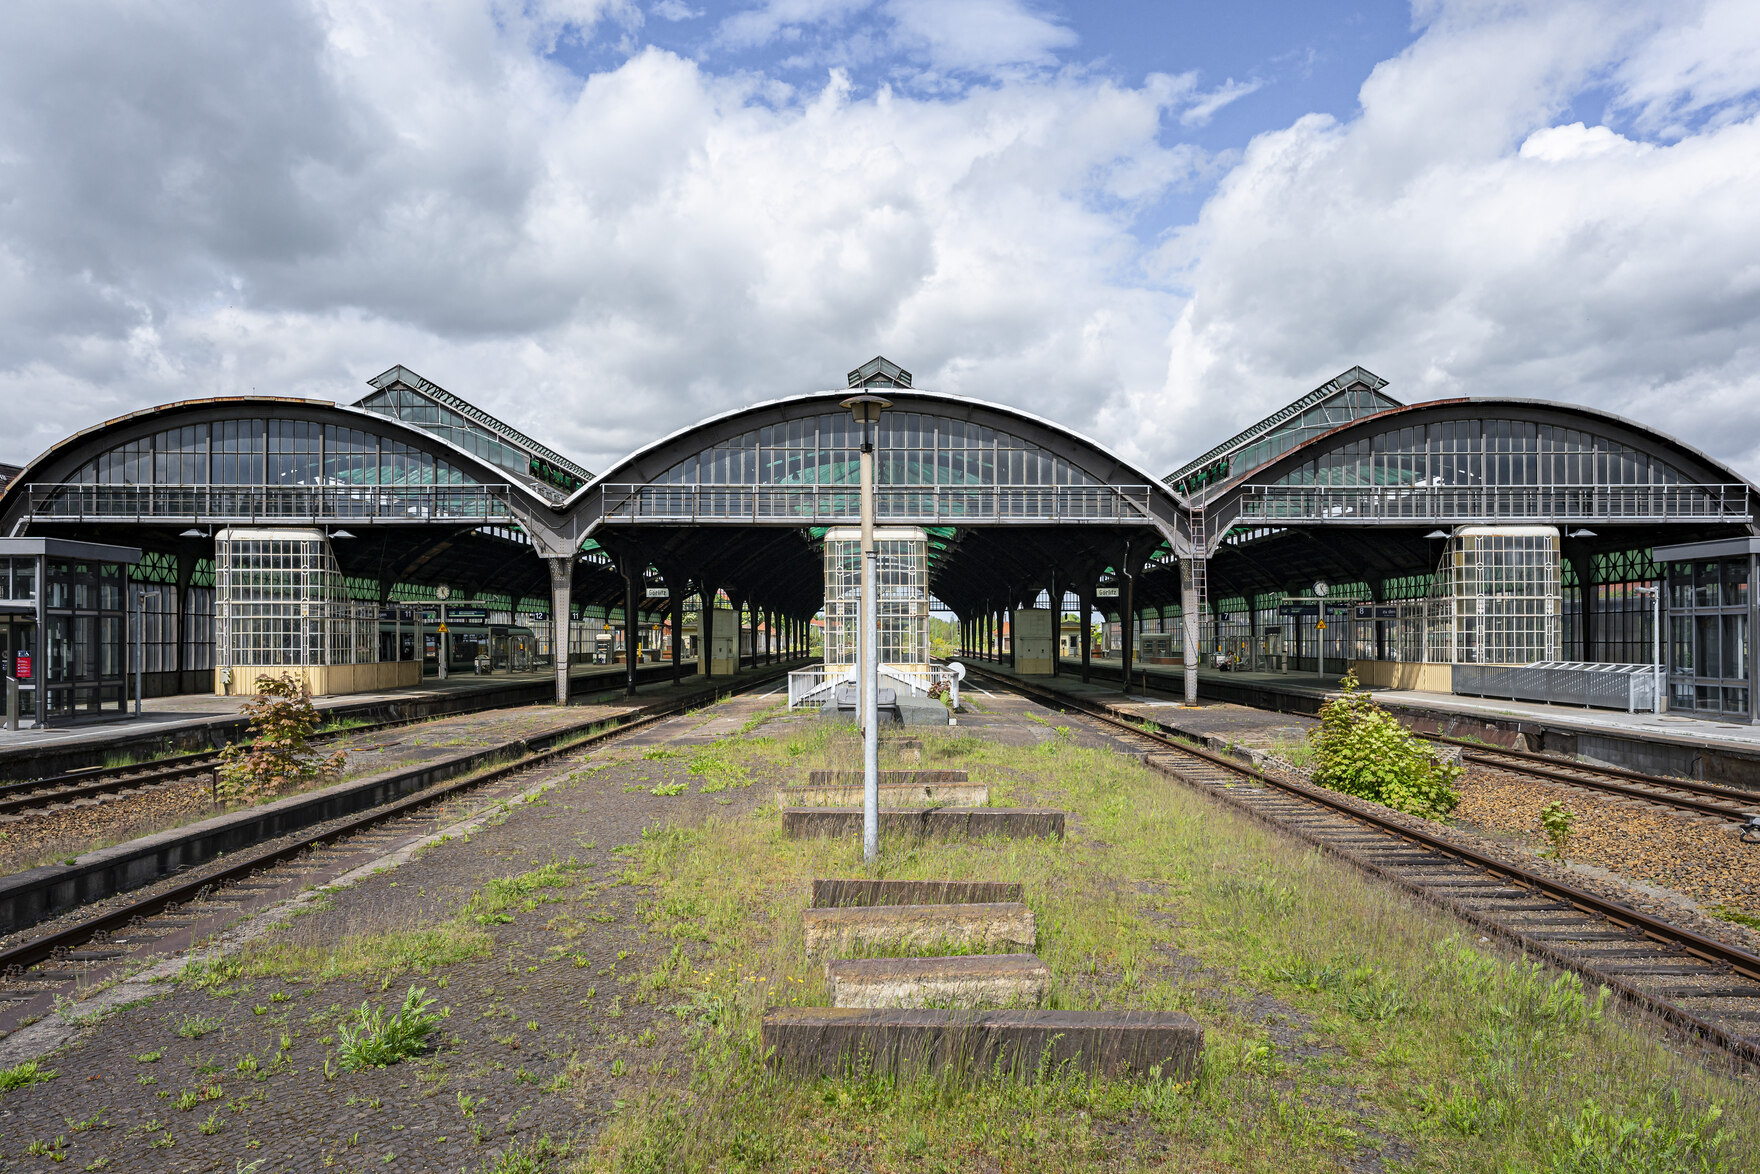 Bahnhof mit mehreren Gleisen und drei Bahnsteigen